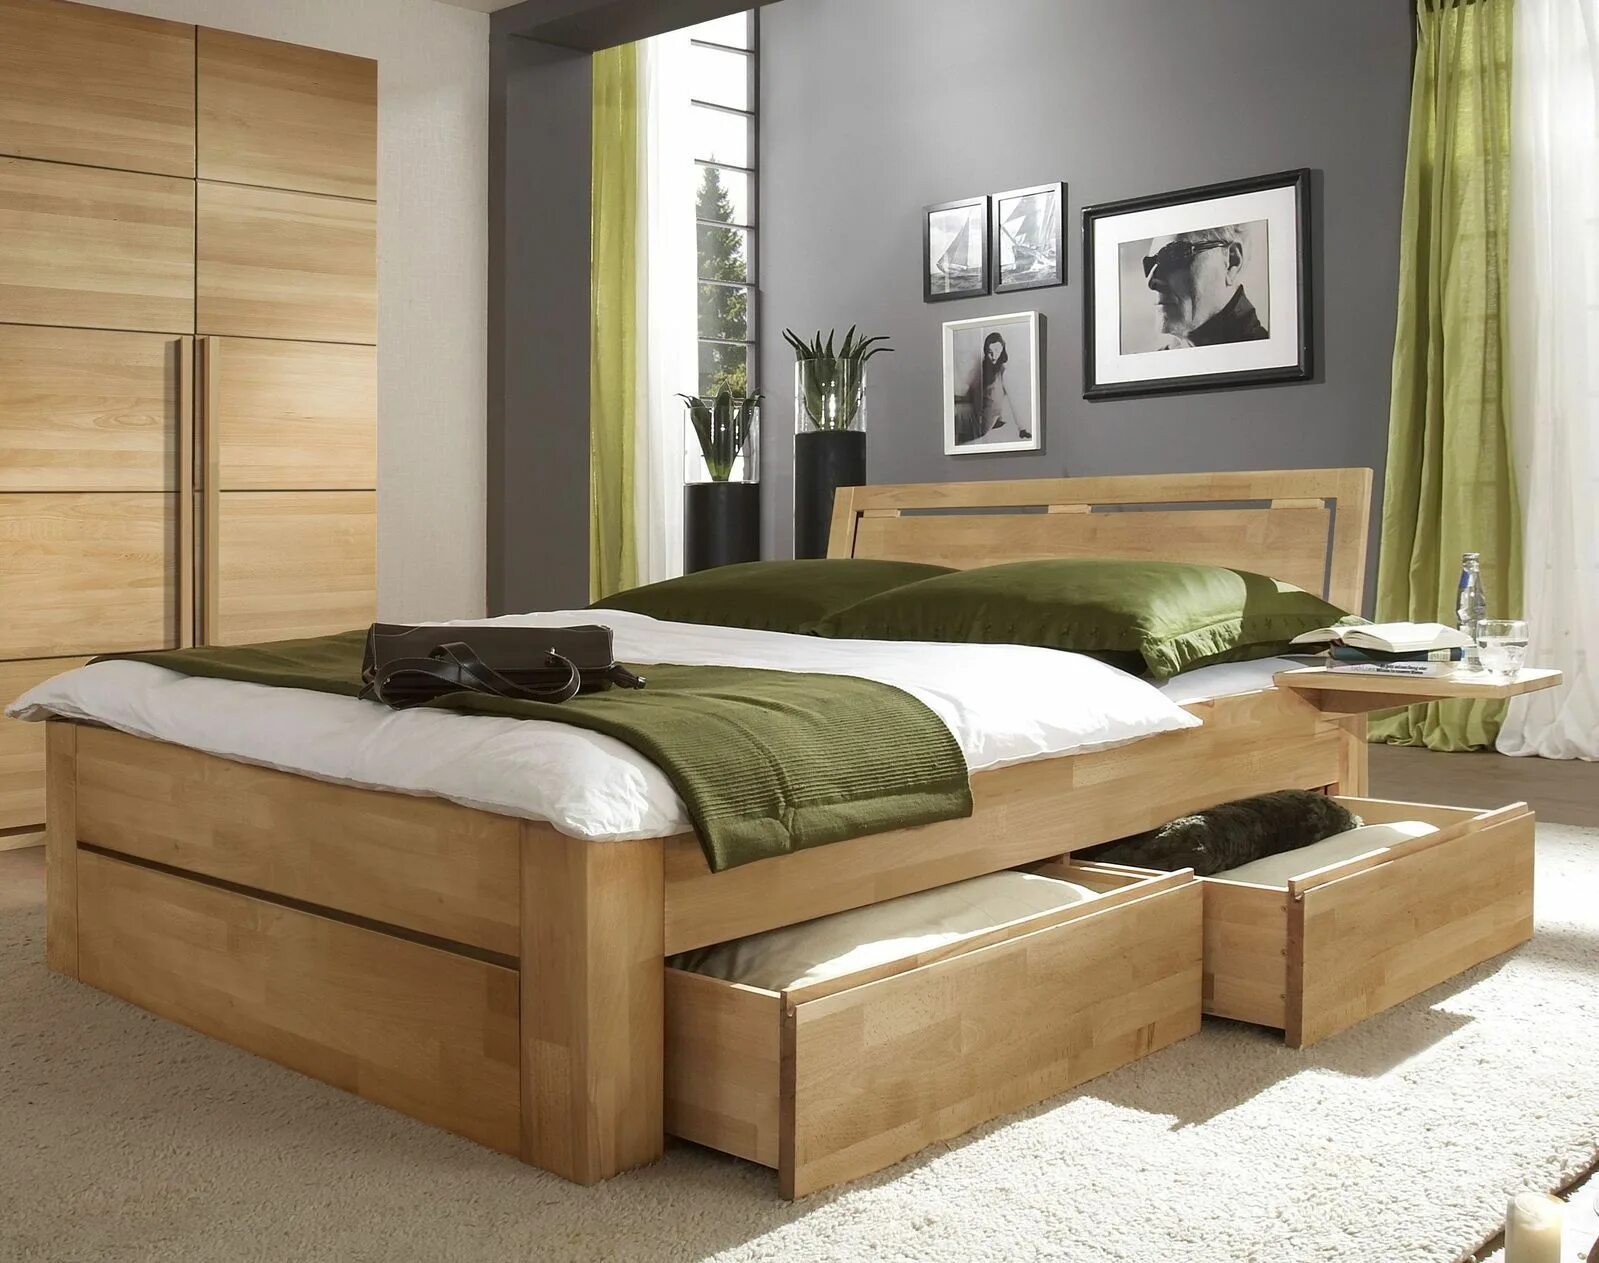 Двуспальная кровать фото дерево. Стильные деревянные кровати. Кровать двуспальная деревянная. Кровать деревянная двуспальная с ящиками. Деревянная кровать с выдвижными ящиками.